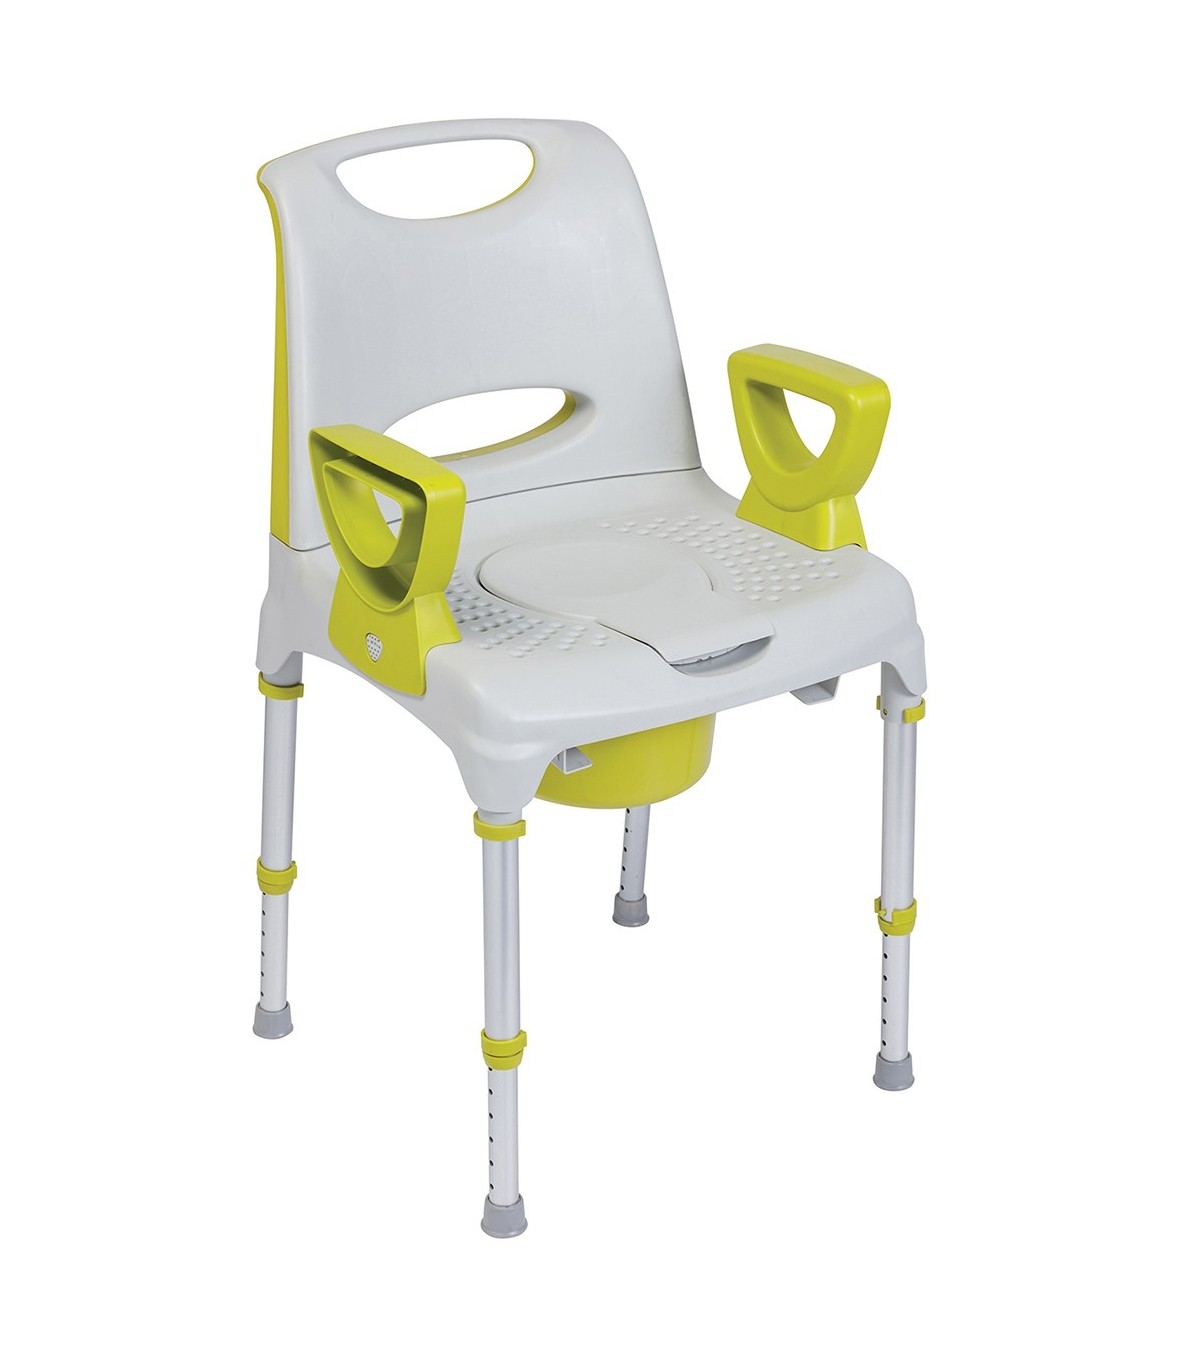 Coussin d'assise confort gel pour fauteuil - Rehausse de 7 cm